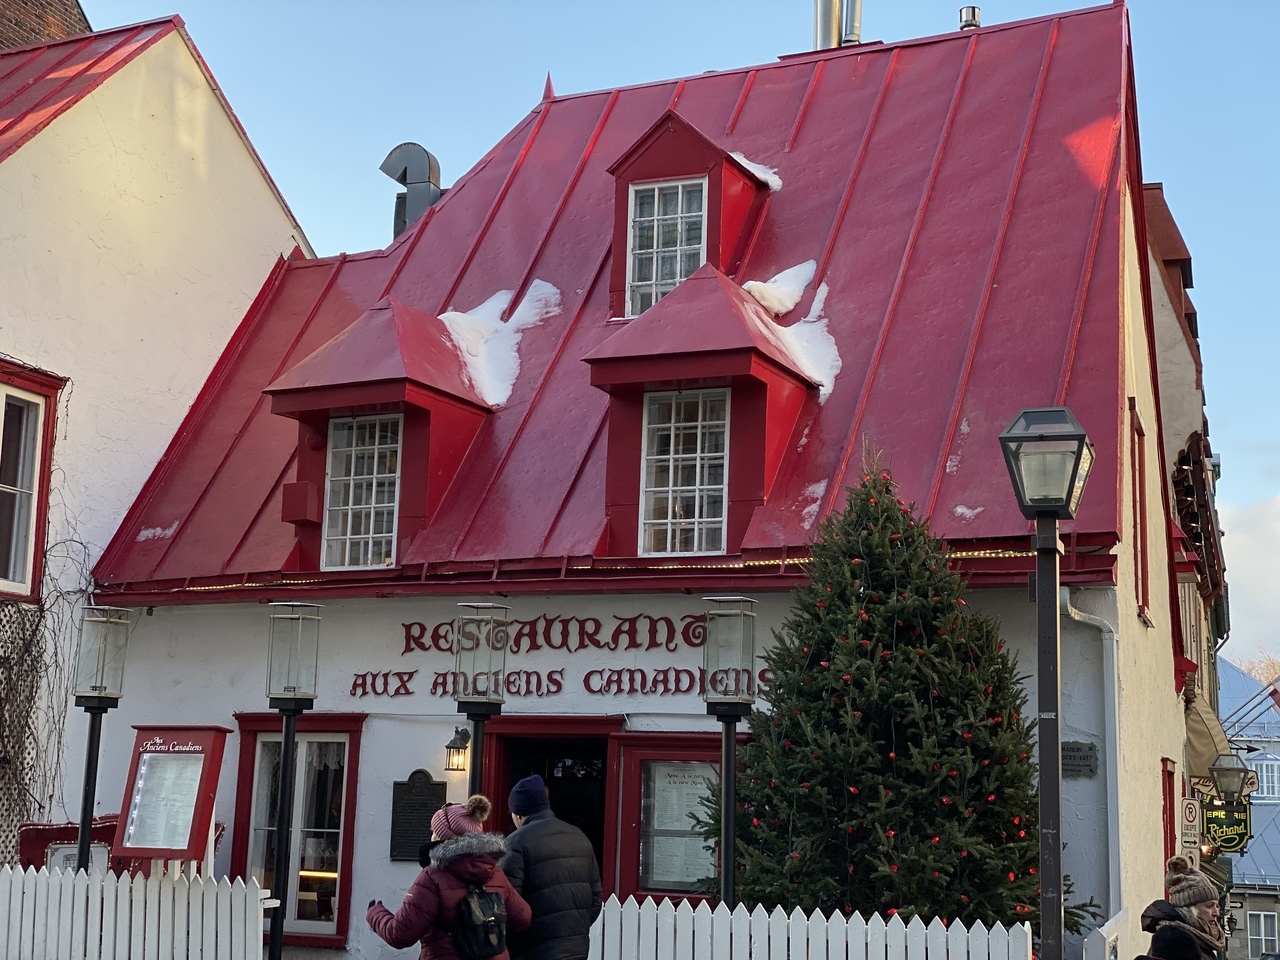 時刻は15時過ぎ頃だったでしょうか
お腹も空ていたのでだいぶ遅めのランチです
ケベックで一番人気のレストラン
オーザンシアンカナディアンへ向かいました
赤い屋根が目印の可愛い雰囲気のレストラン